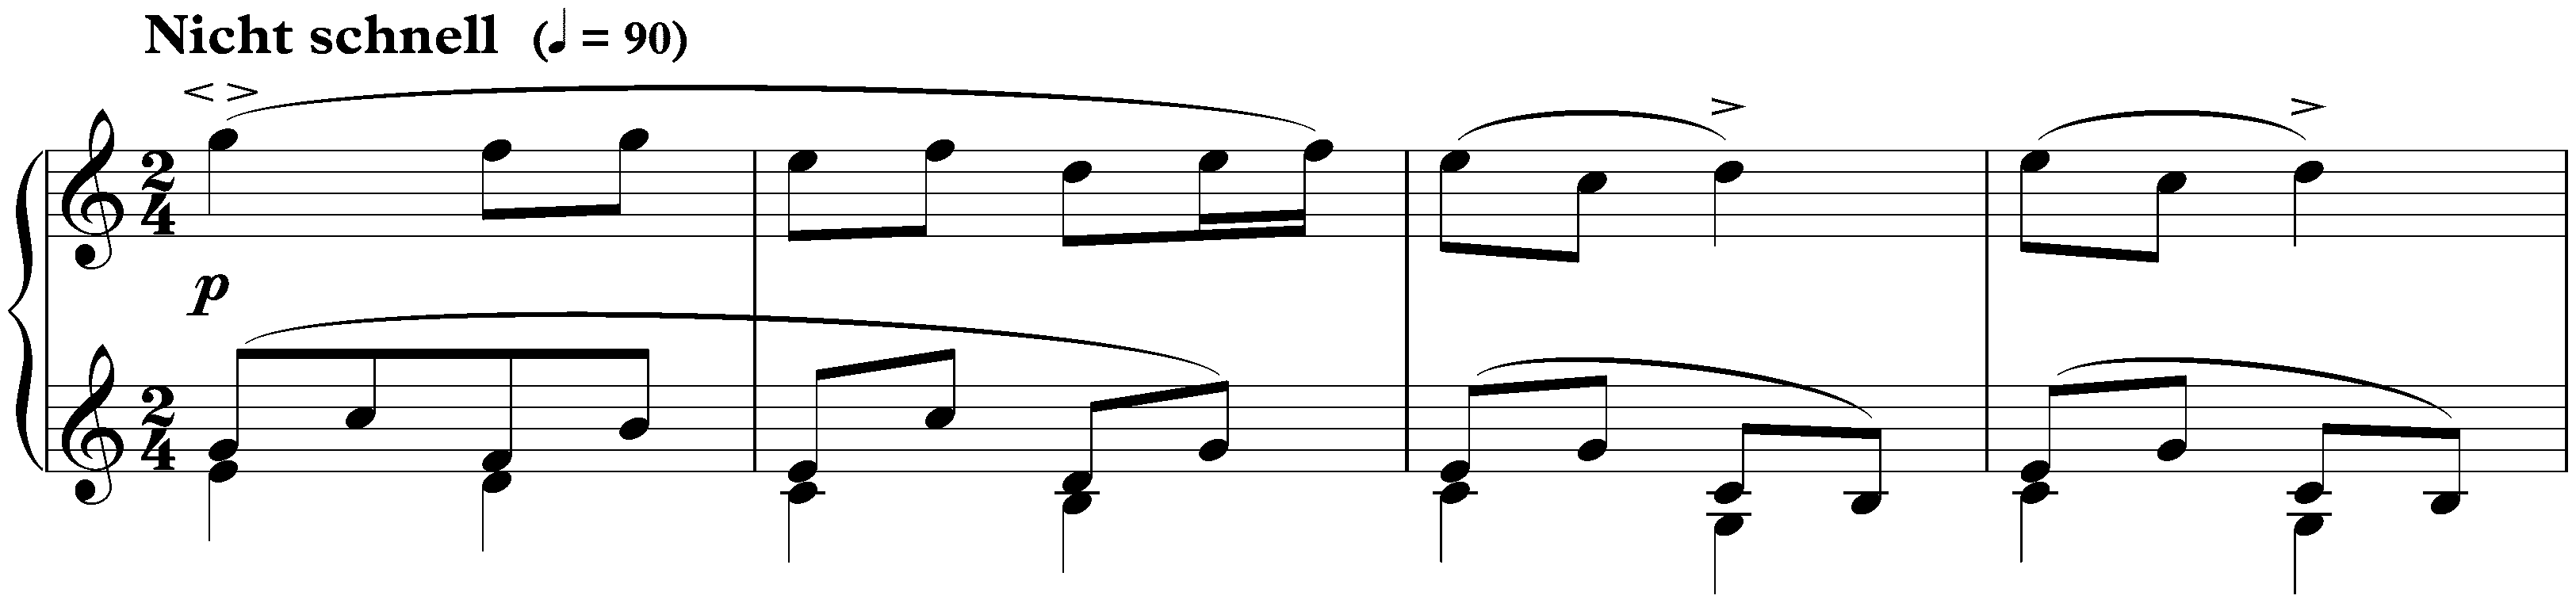 Sonate für die Jugend in G major, op. 118 no. 1; 3. Puppenwiegenlied: Nicht schnell